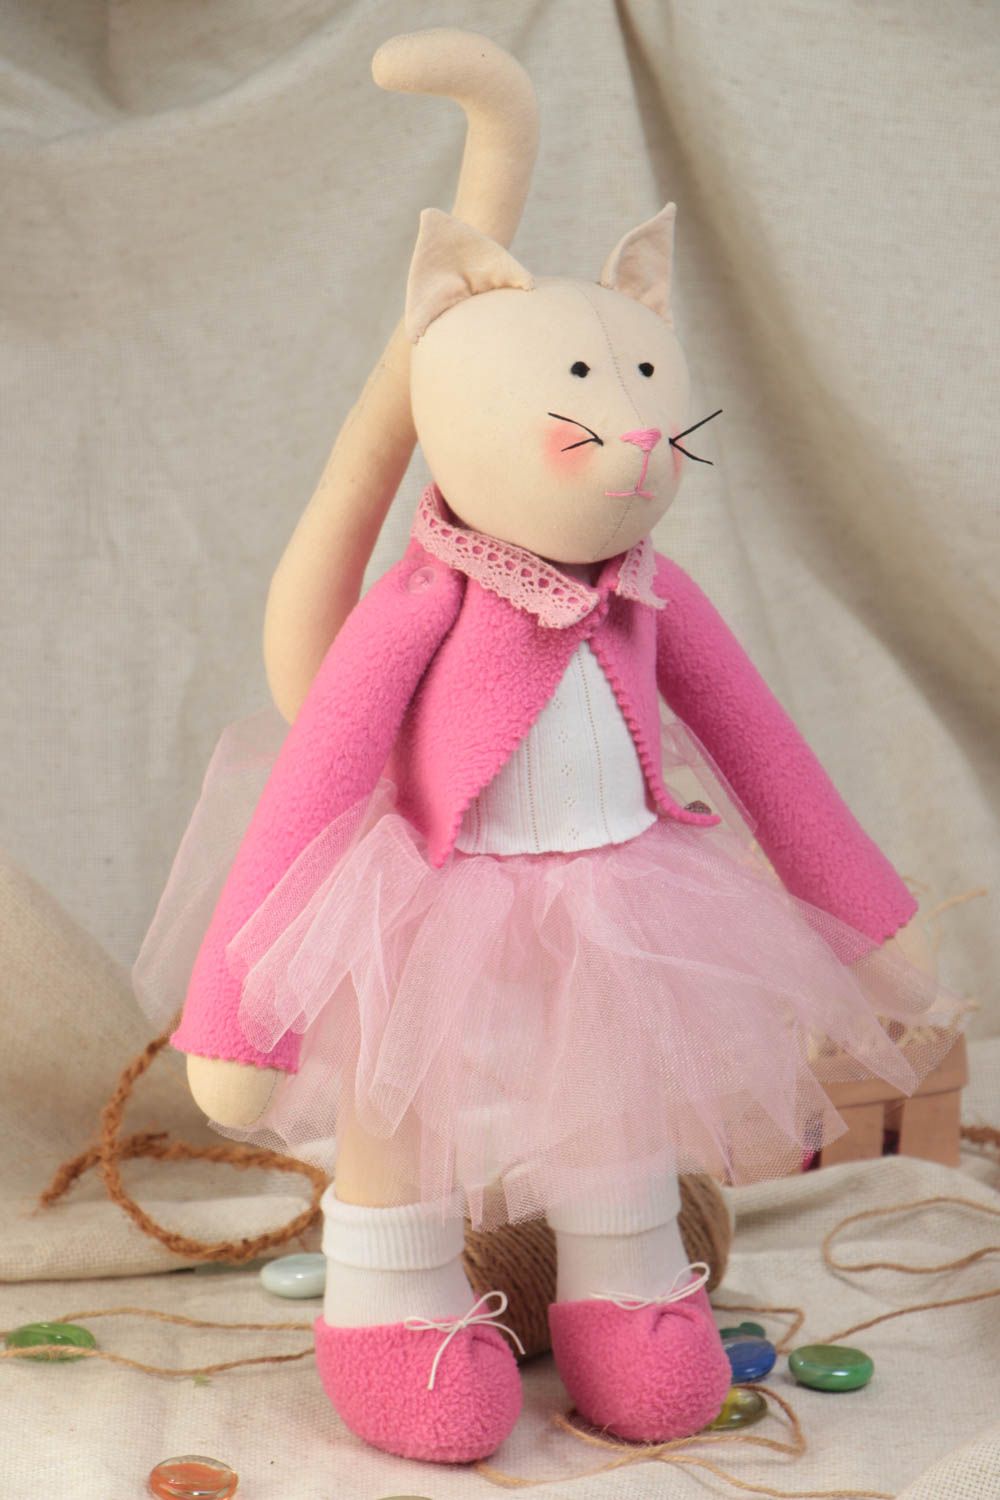 Текстильная кукла кошка из хлопка и флиса ручной работы авторская игрушка хенд мейд фото 1